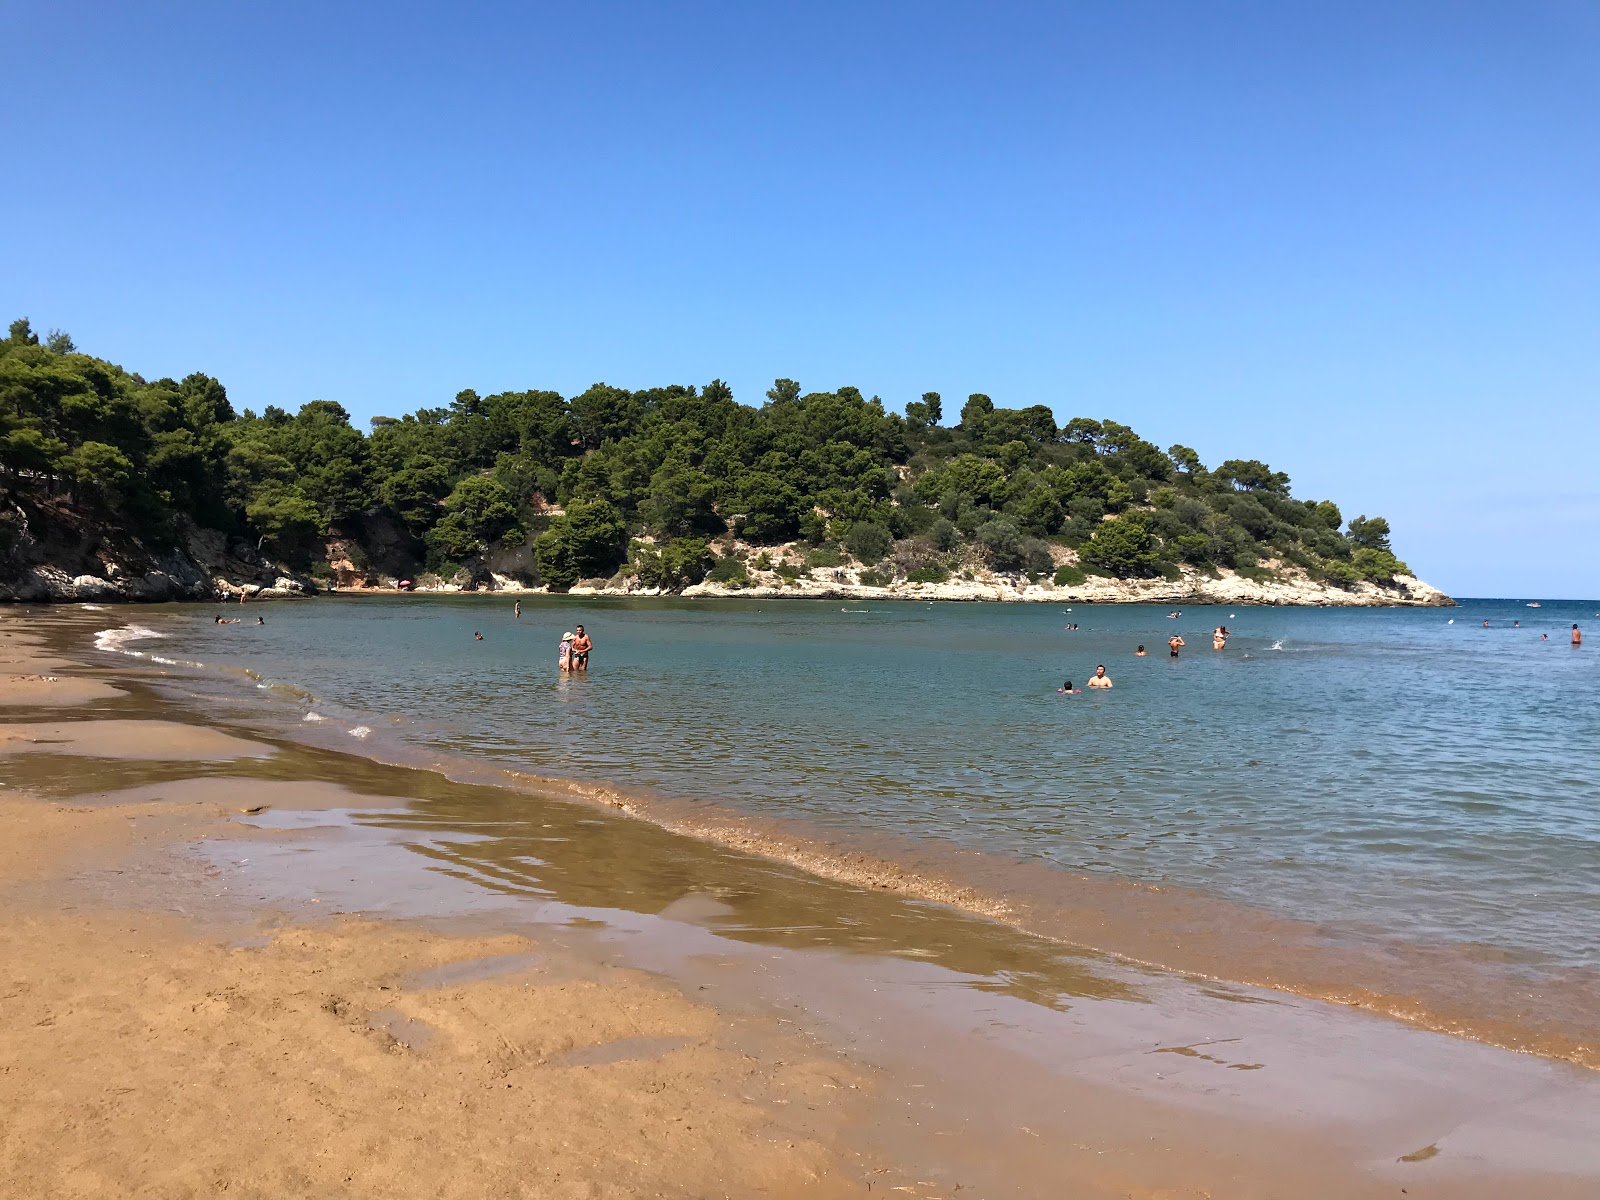 San Felice'in fotoğrafı kahverengi kum yüzey ile